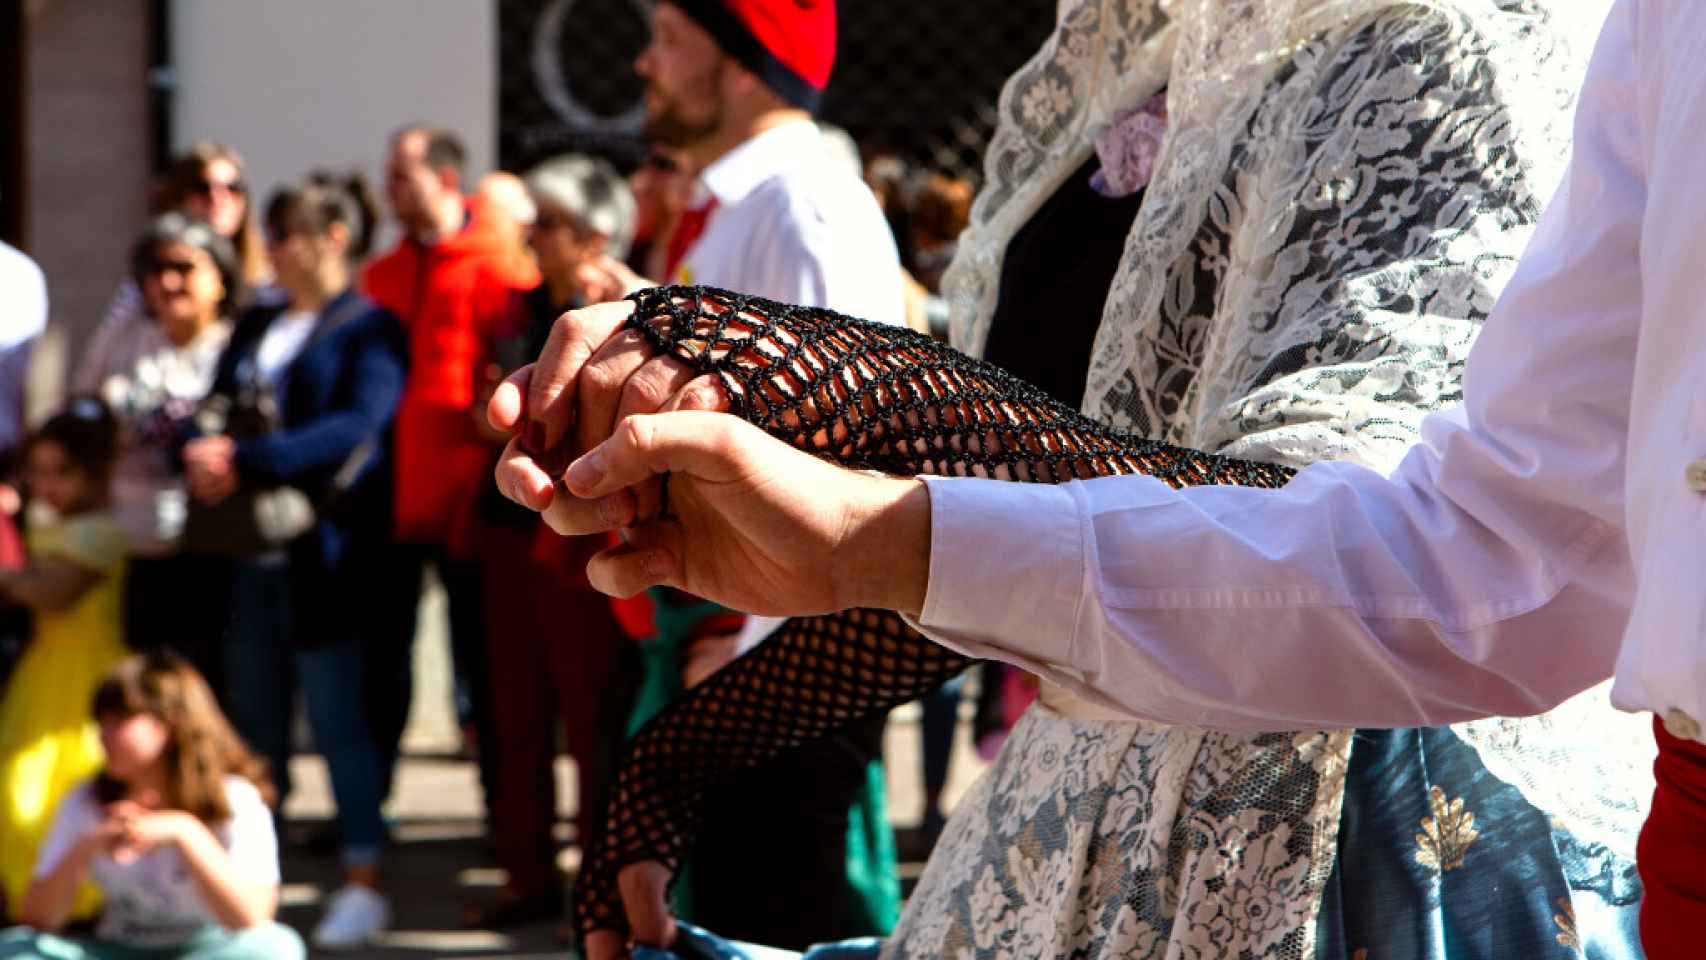 Detalle de dos bailarines de la Tornaboda con la vestimenta tradicional durante una parte de la danza / AJUNTAMENT DE VILADECANS